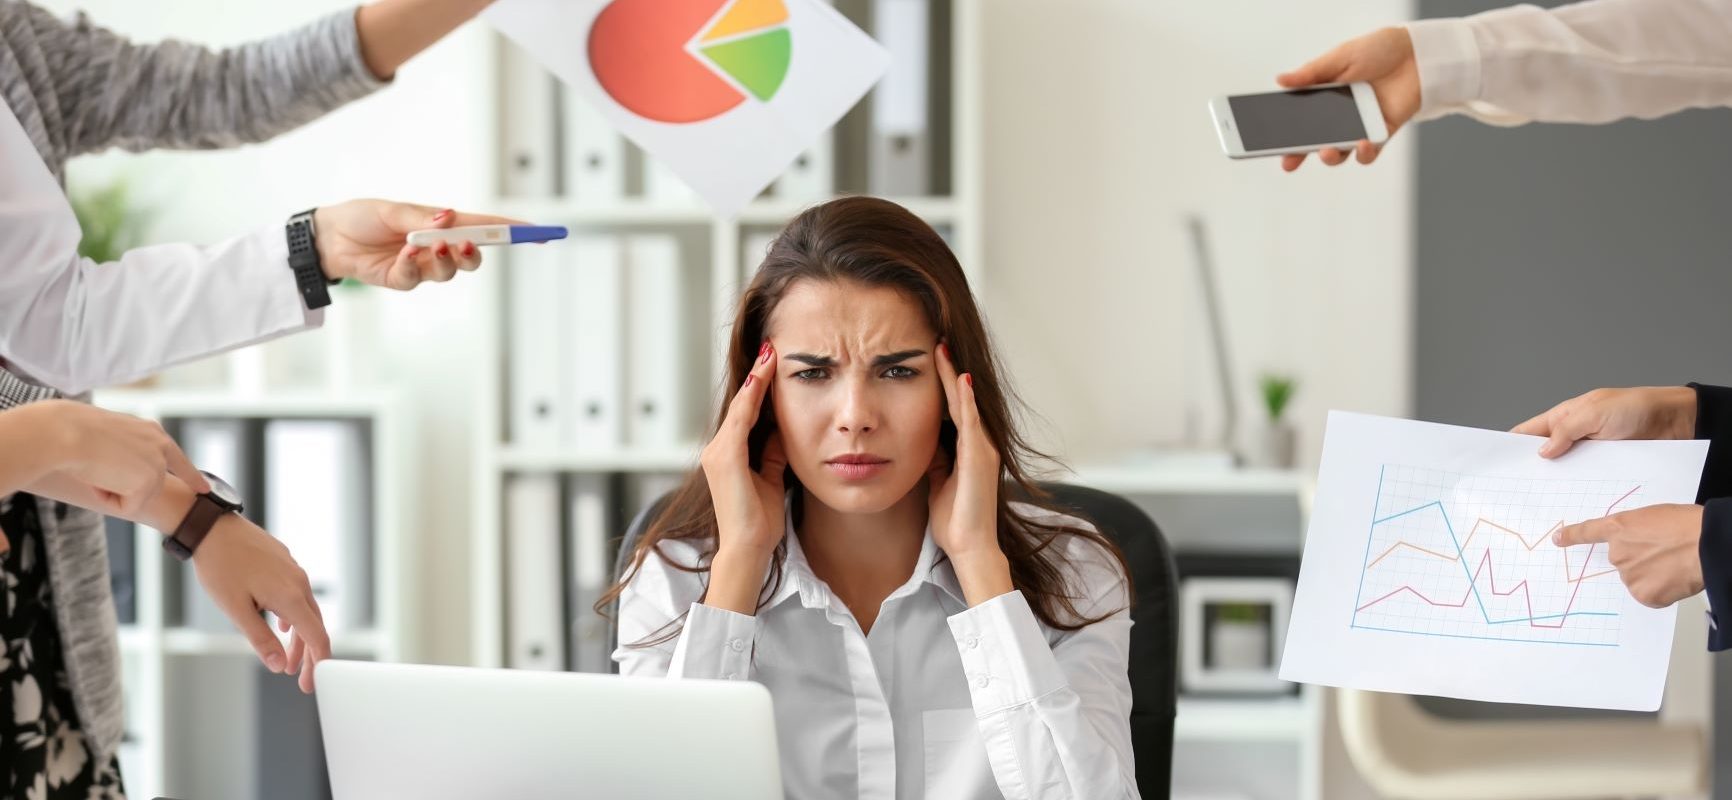 Stres w pracy - jak sobie z nim poradzić? Kobieta w białej koszuli siedzi w przy biurku w pracy i trzyma się za głowę przytłoczona obowiązkami, ktoś z każdej strony czegoś od niej chce.